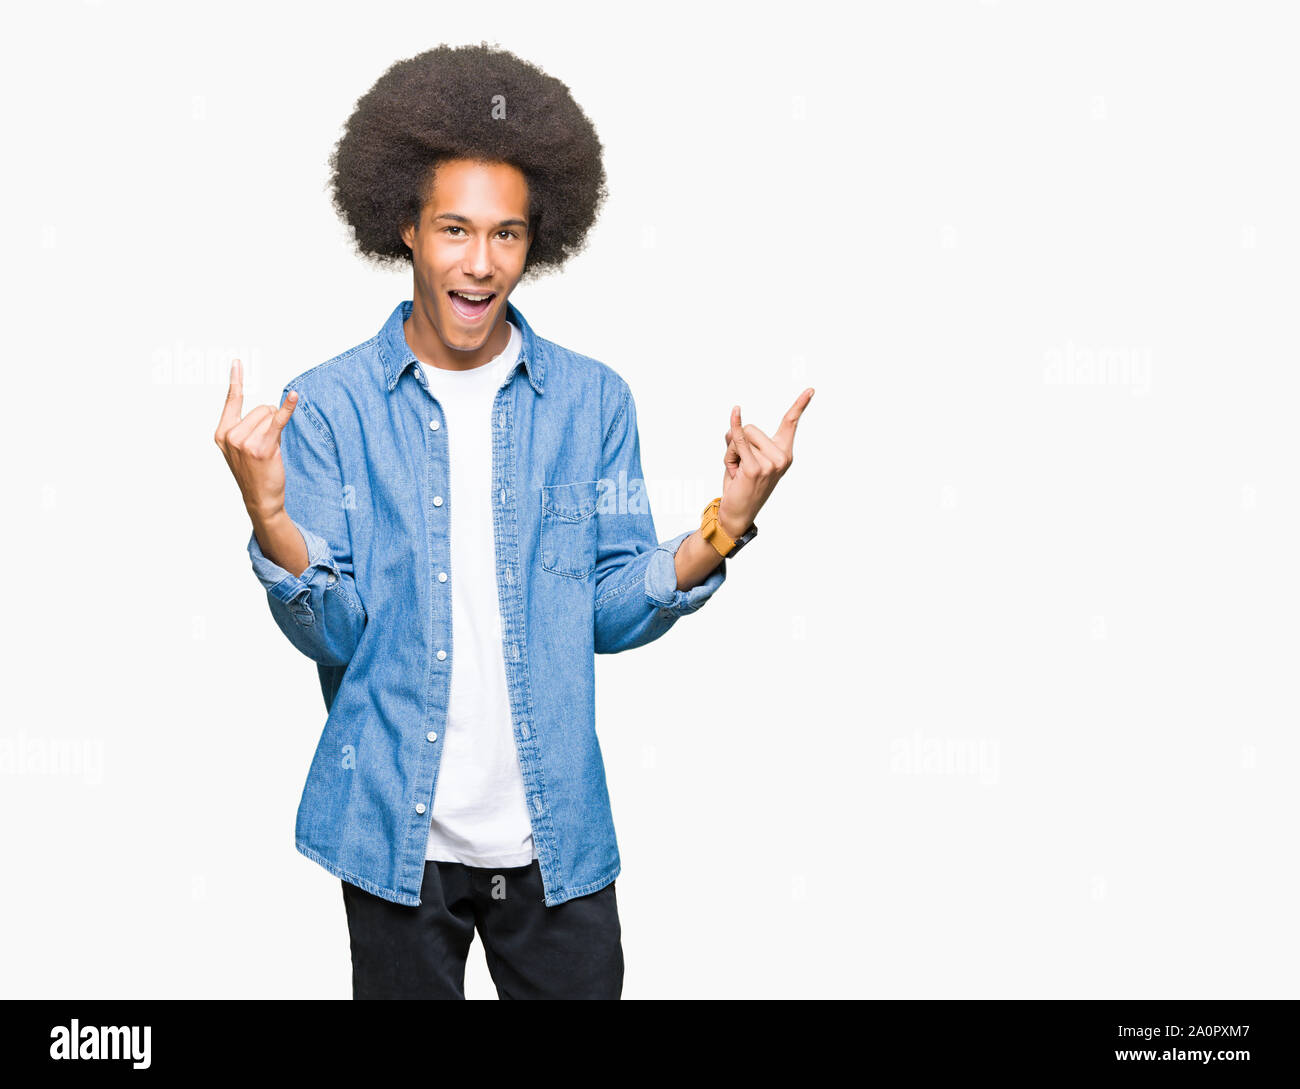 Junge afrikanische amerikanische Mann mit afro Haar schreien mit verrückten Ausdruck tun Rock Symbol mit hands up. Musik Star. Schwere Konzept. Stockfoto